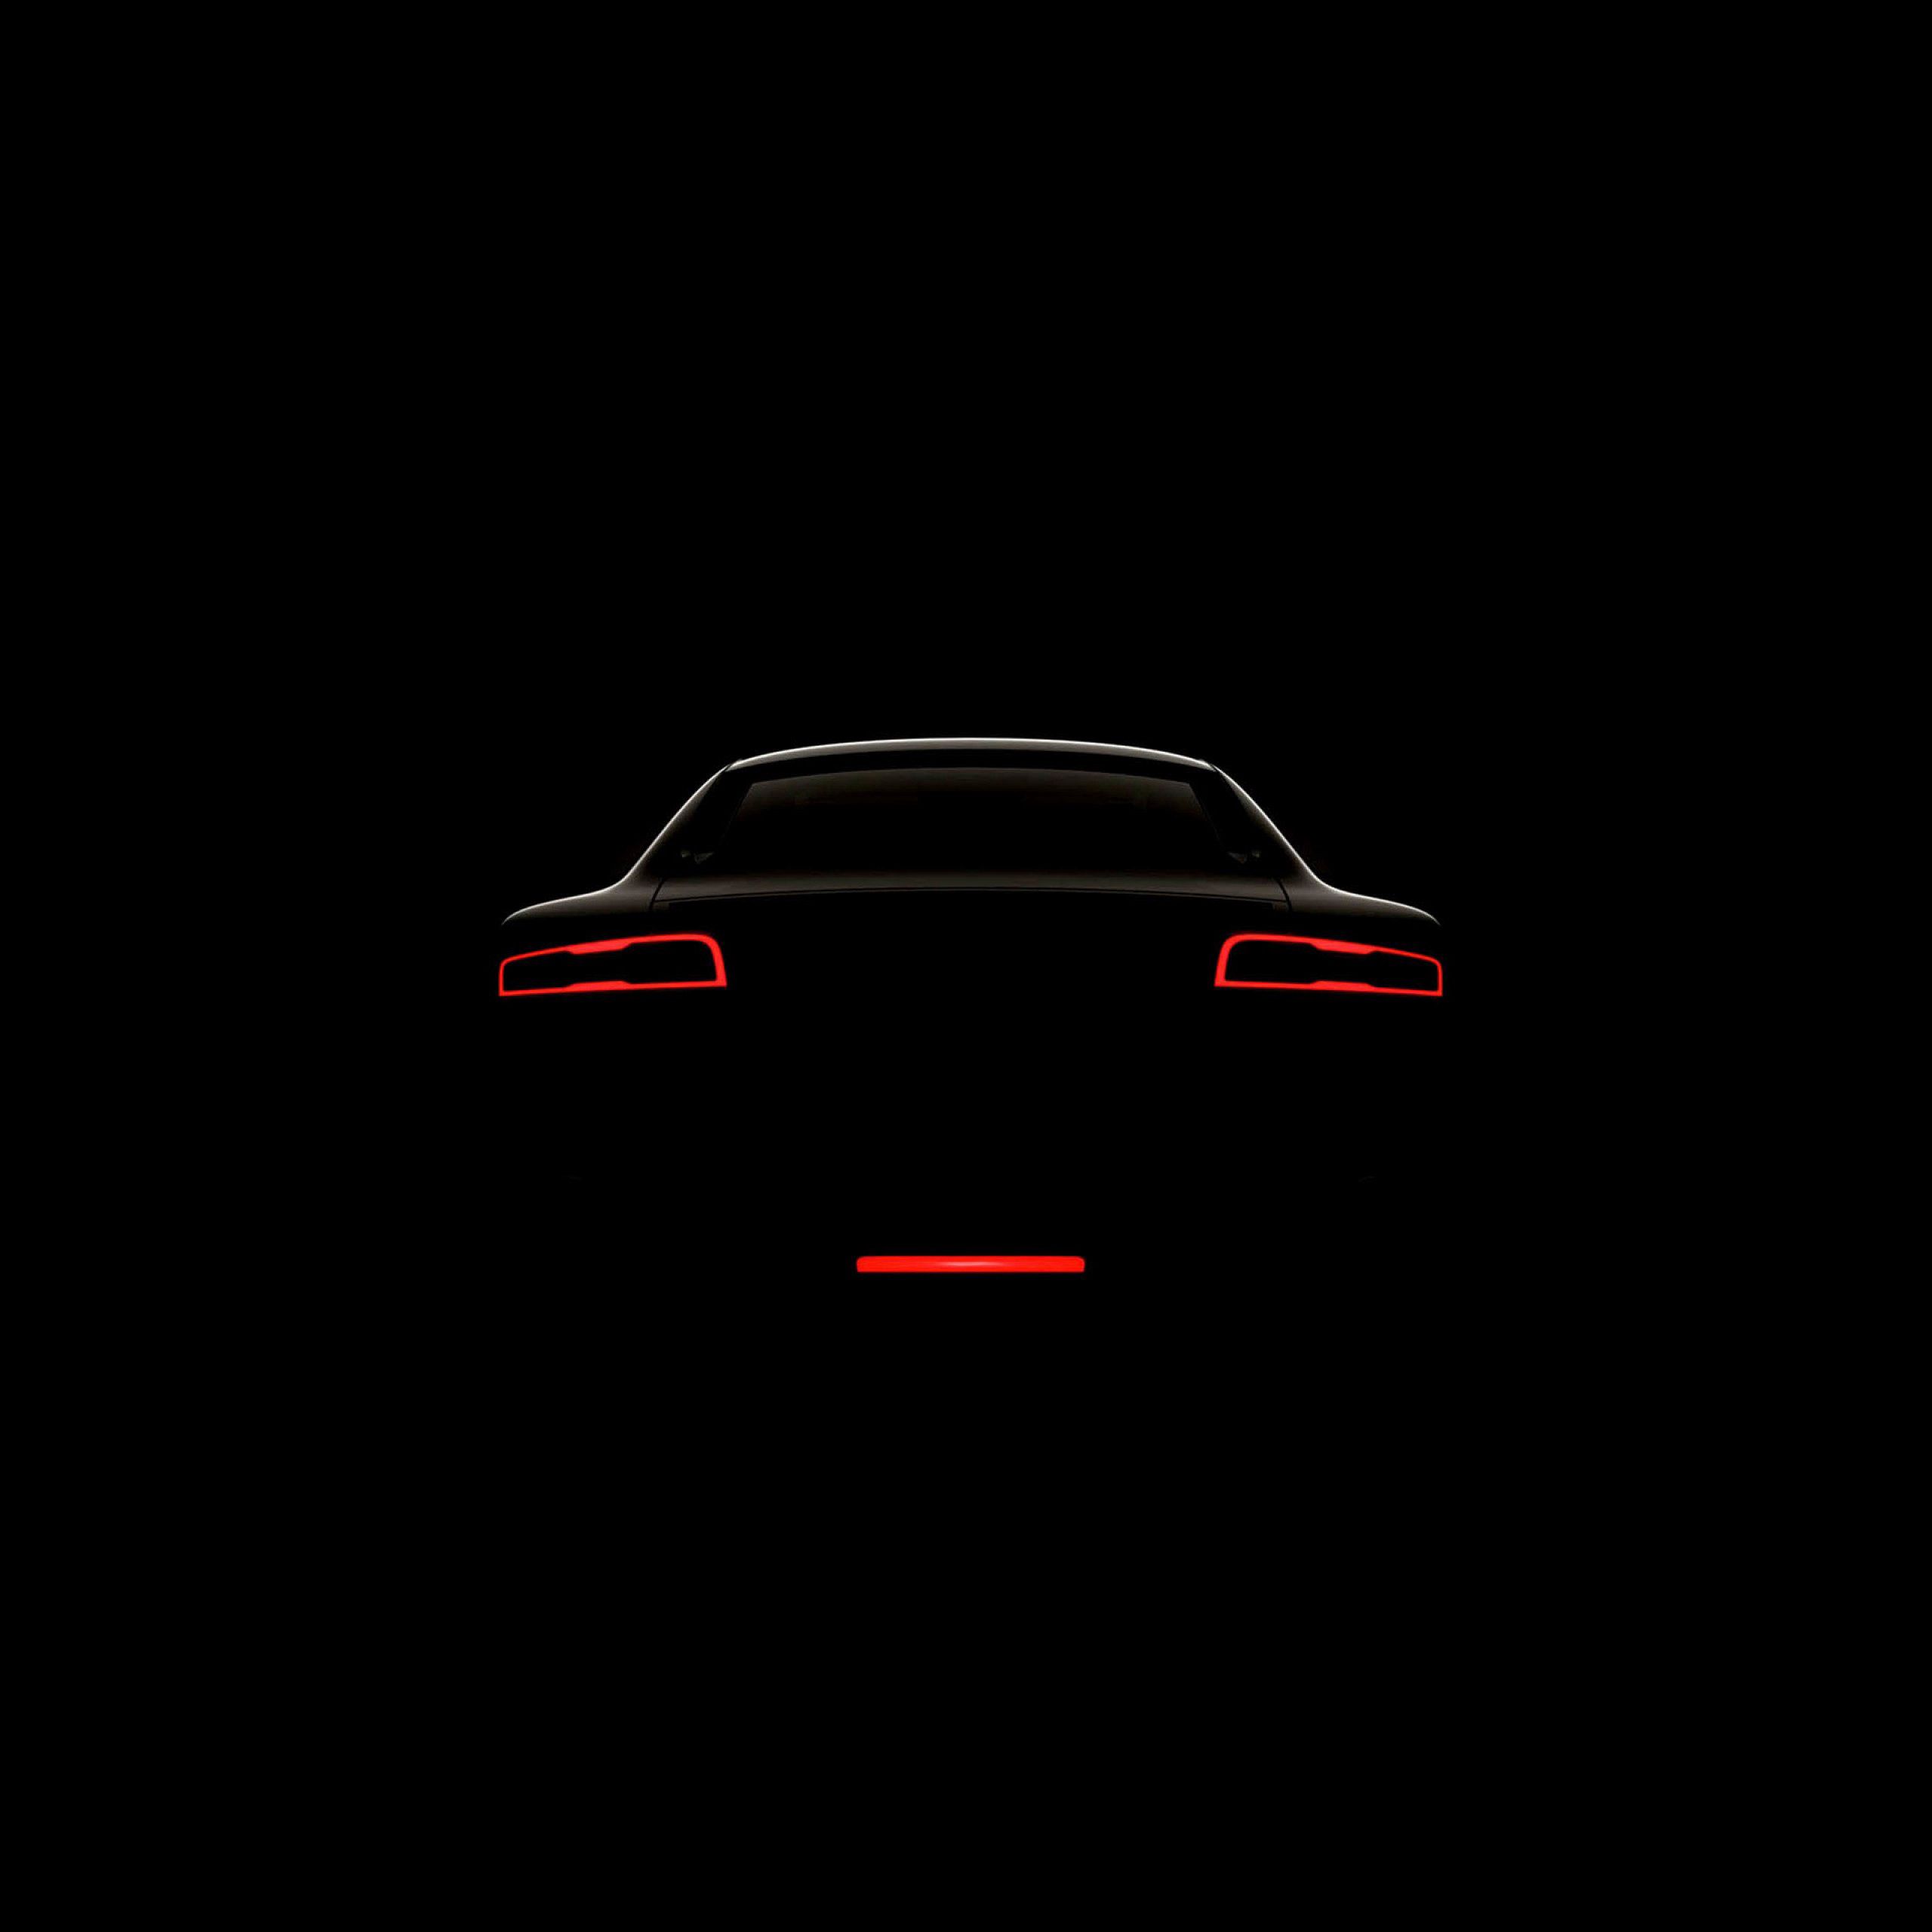 dark, car, minimalism, lights, headlights Full HD